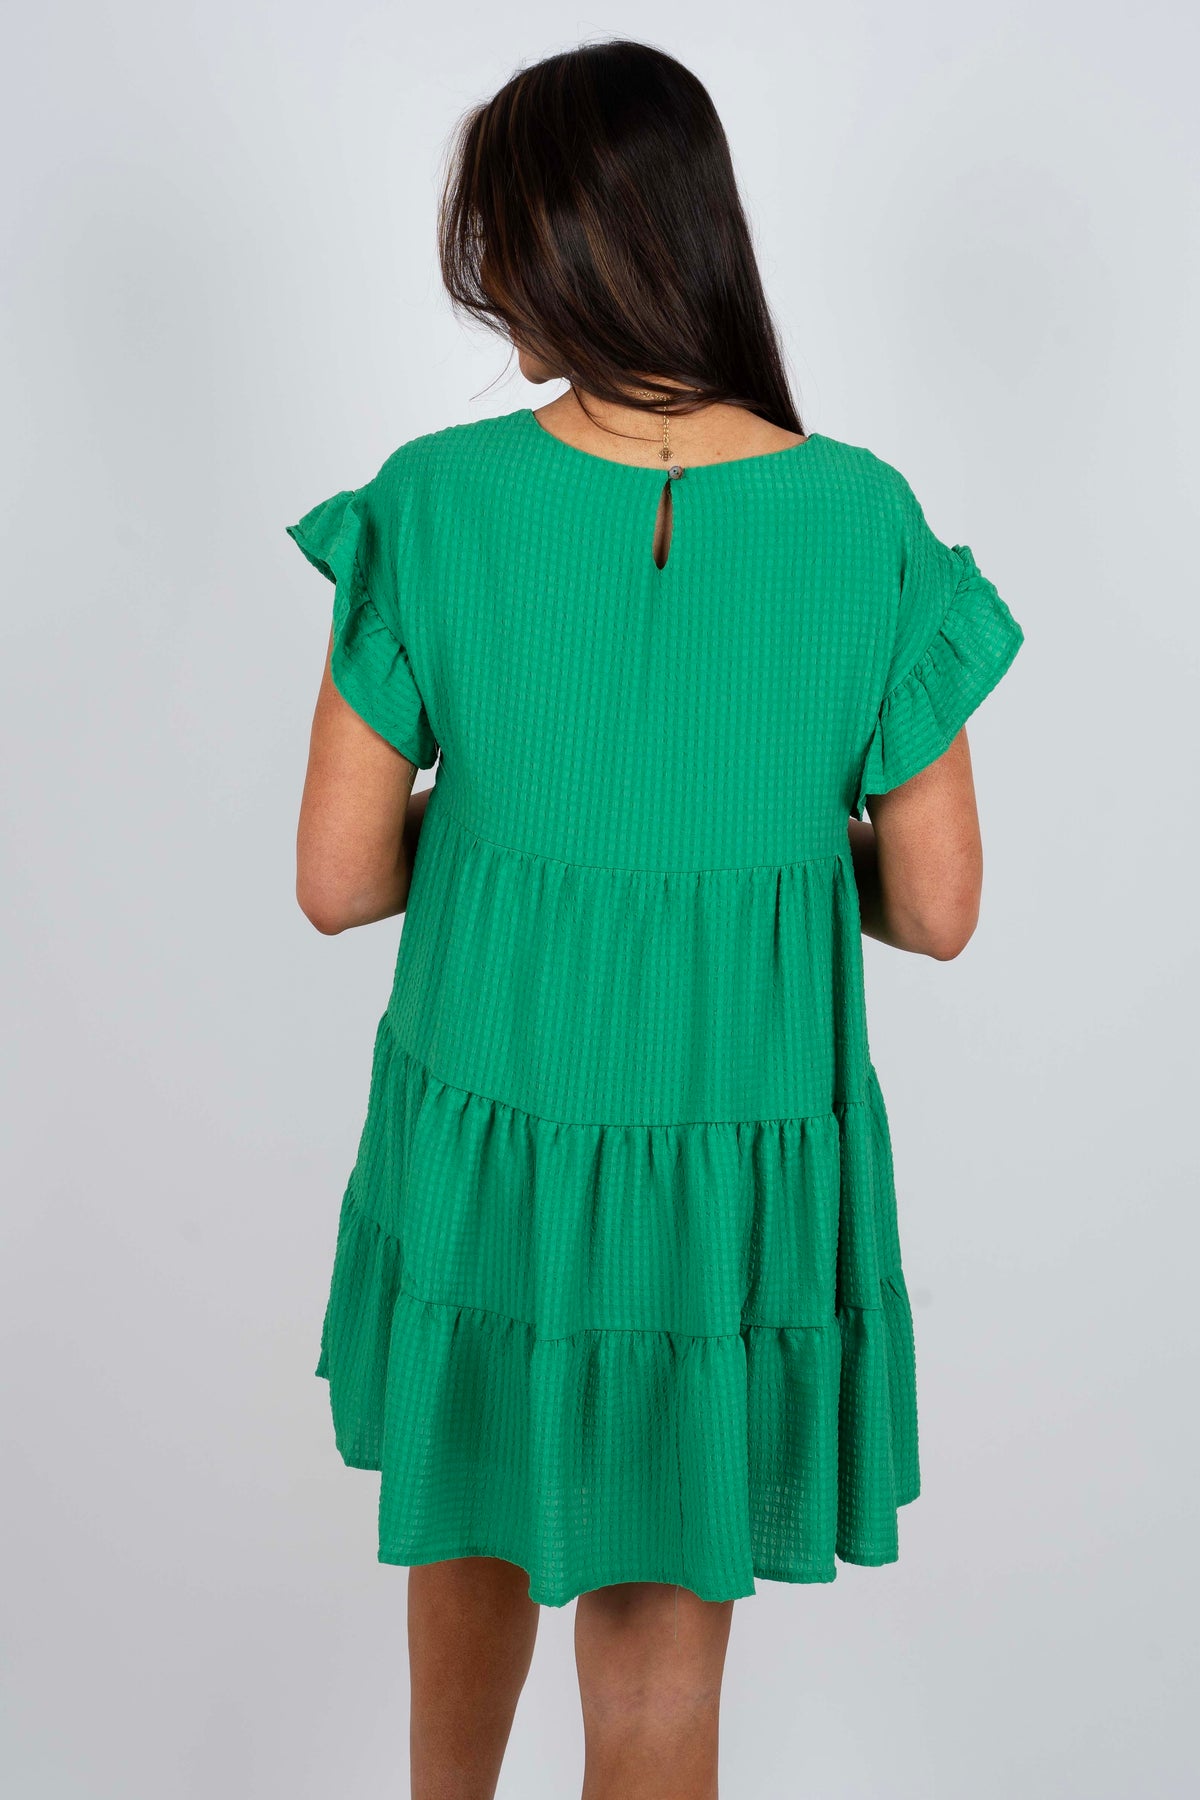 Never Felt Better Dress (Green)